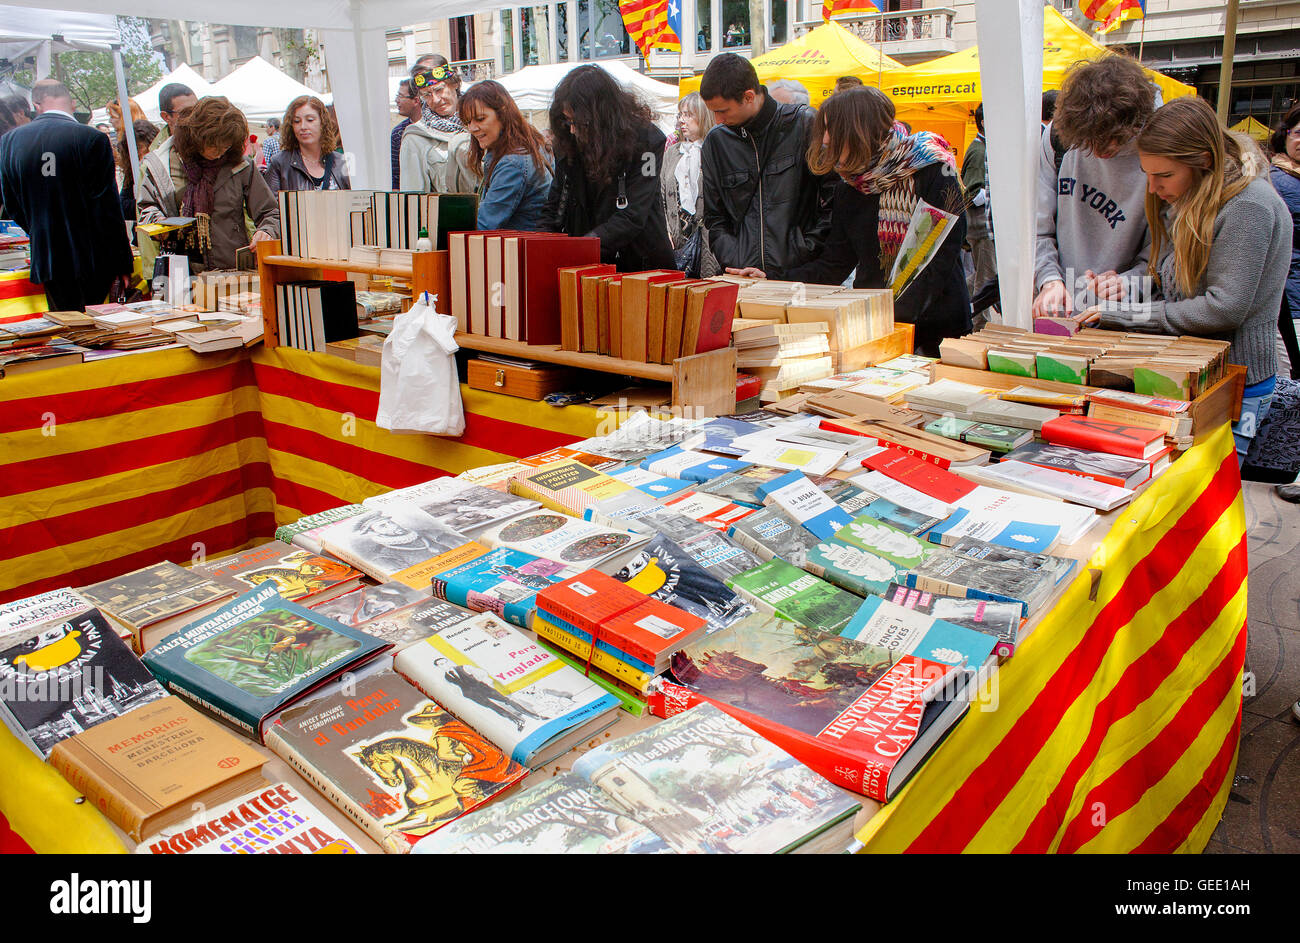 Blocage d'adresses dans la Rambla, le jour de Sant Jordi (23 avril), Barcelone, Catalogne, Espagne Banque D'Images